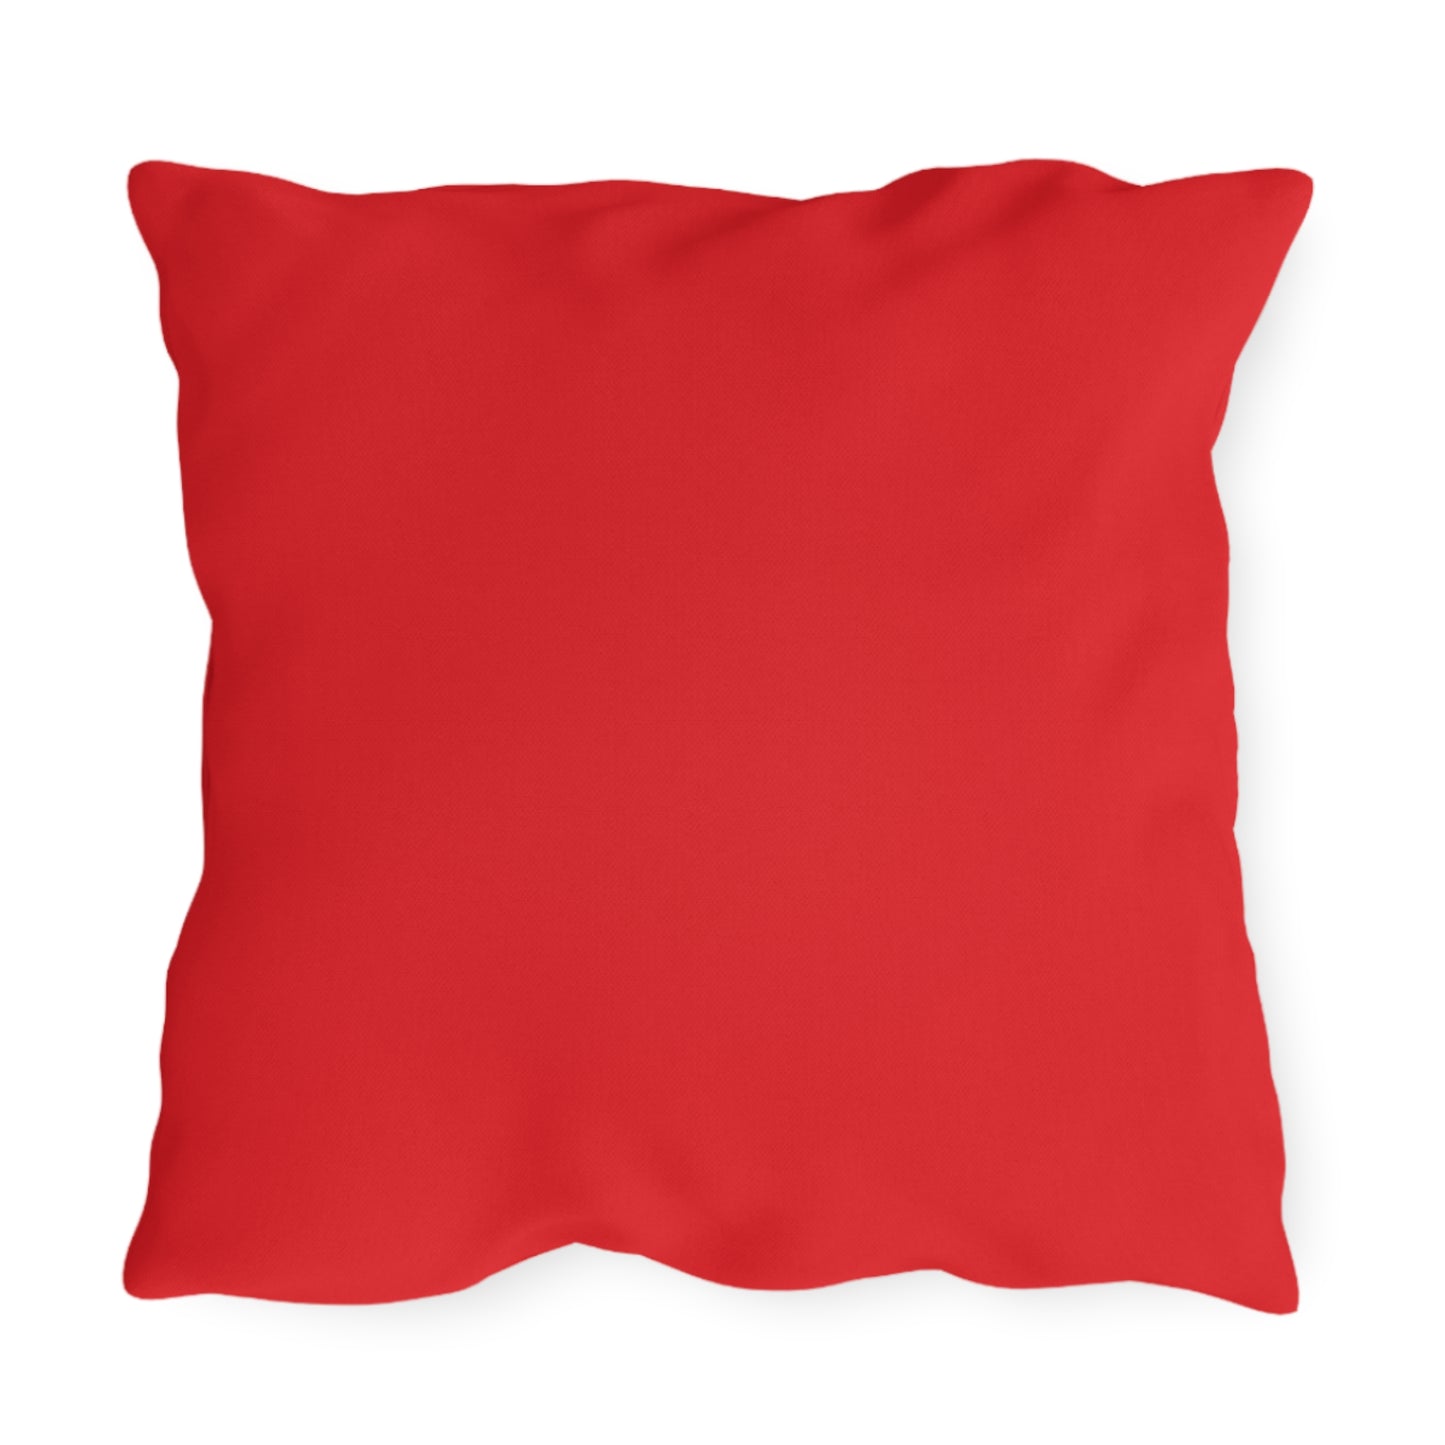 EPHA Outdoor Pillow